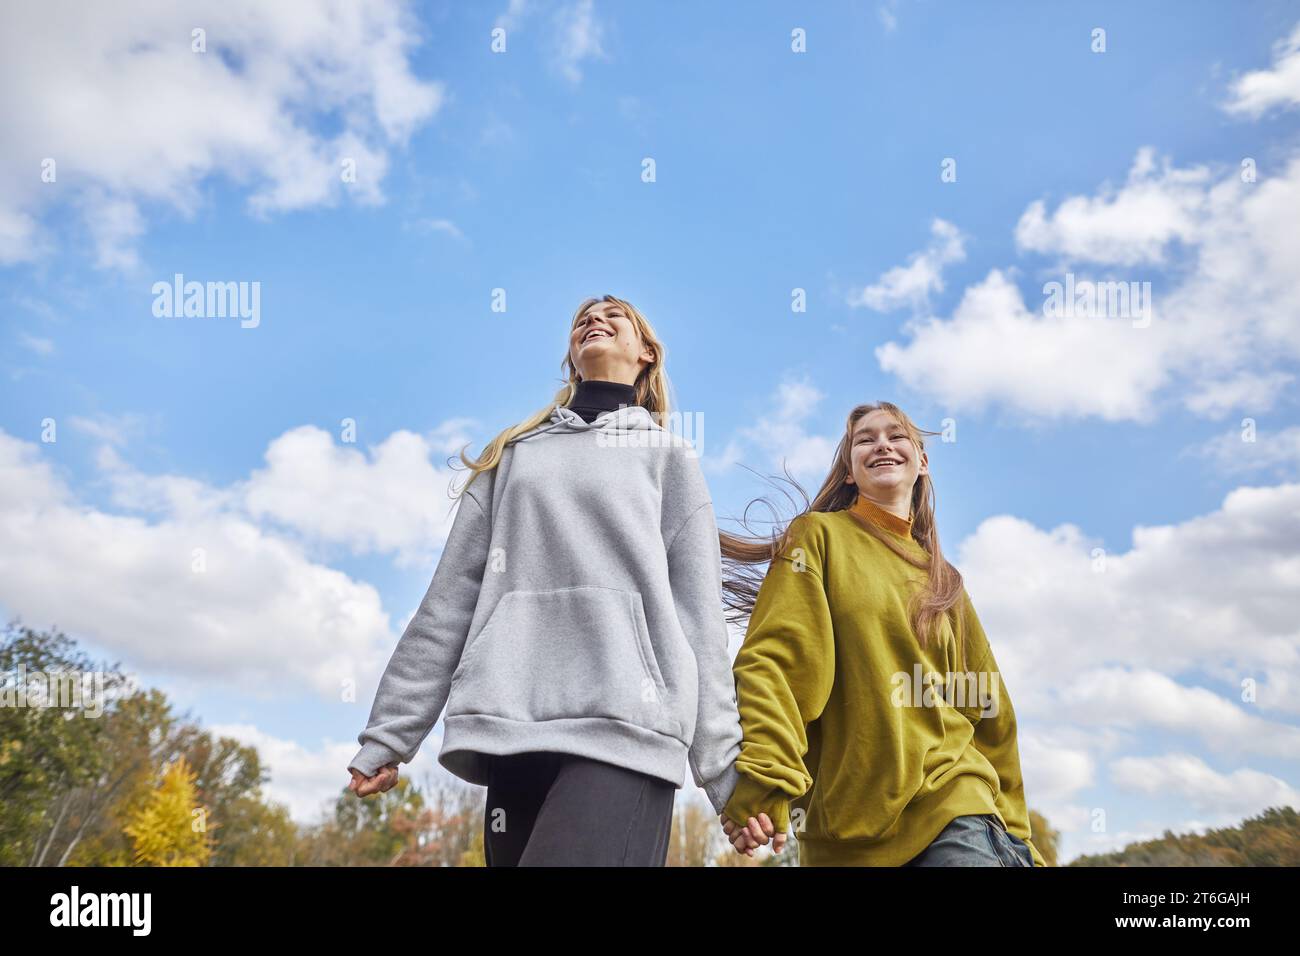 deux jeunes filles joyeuses courant main dans la main contre le ciel Banque D'Images